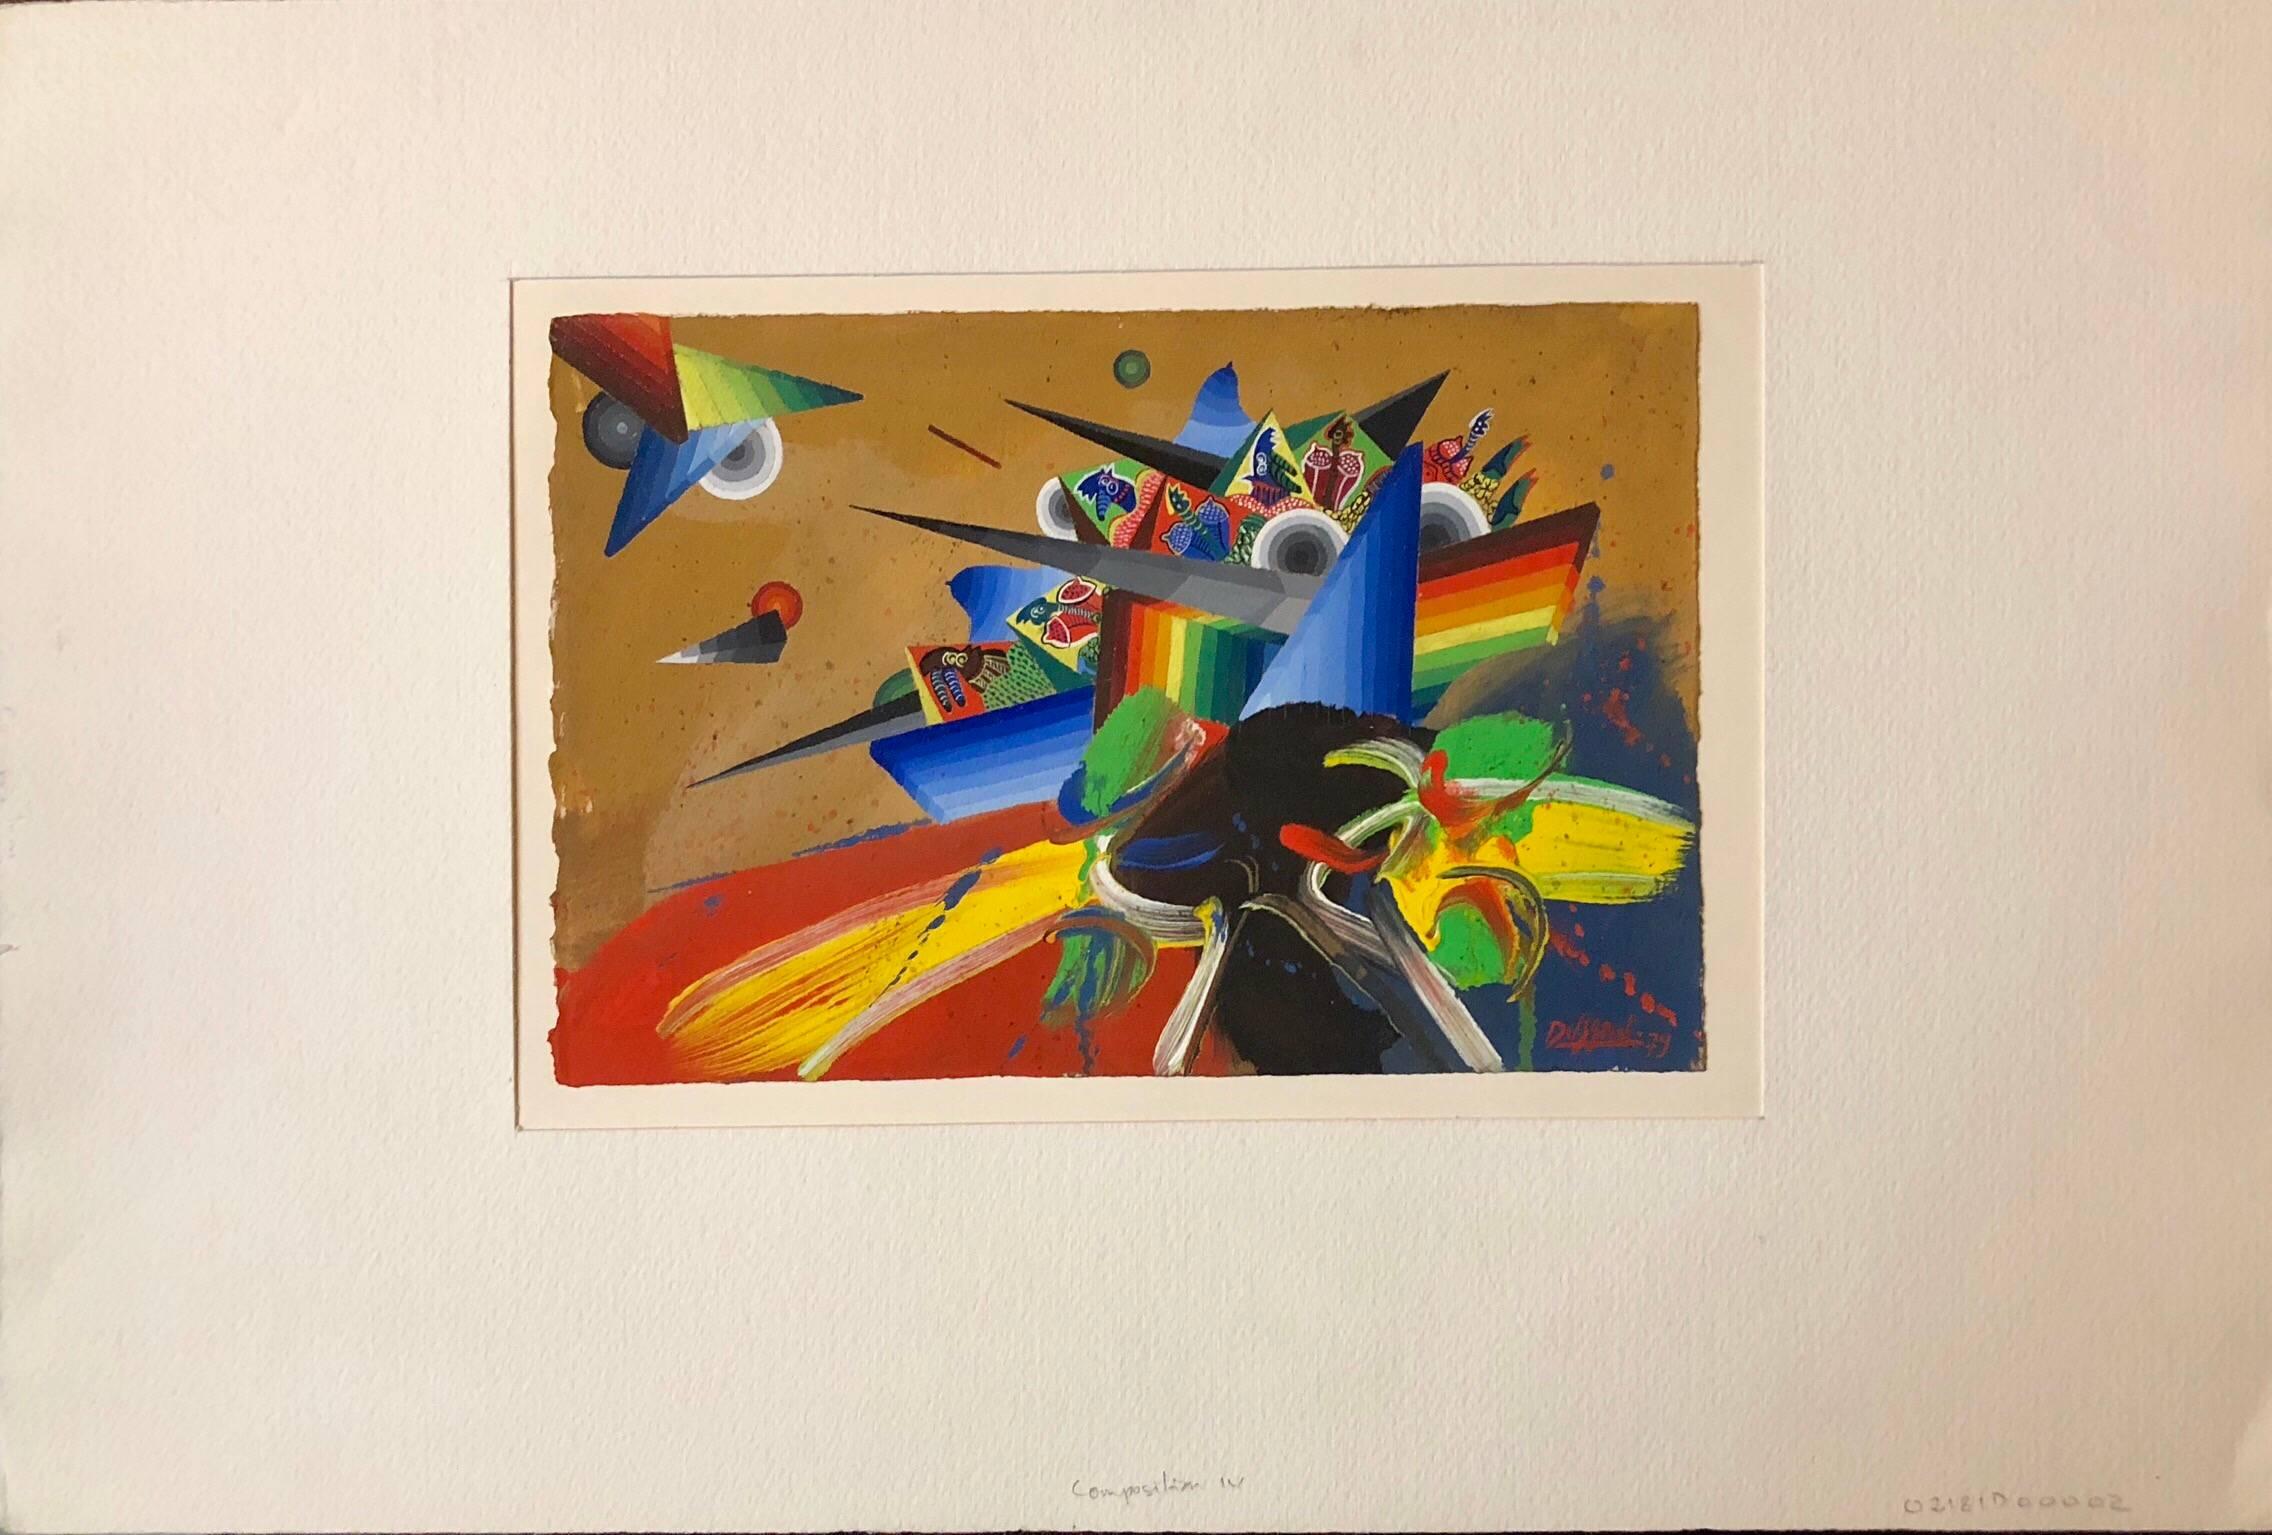 Composition de peinture abstraite surréaliste et colorée française de style futuriste IV - Painting de Georges Dussau